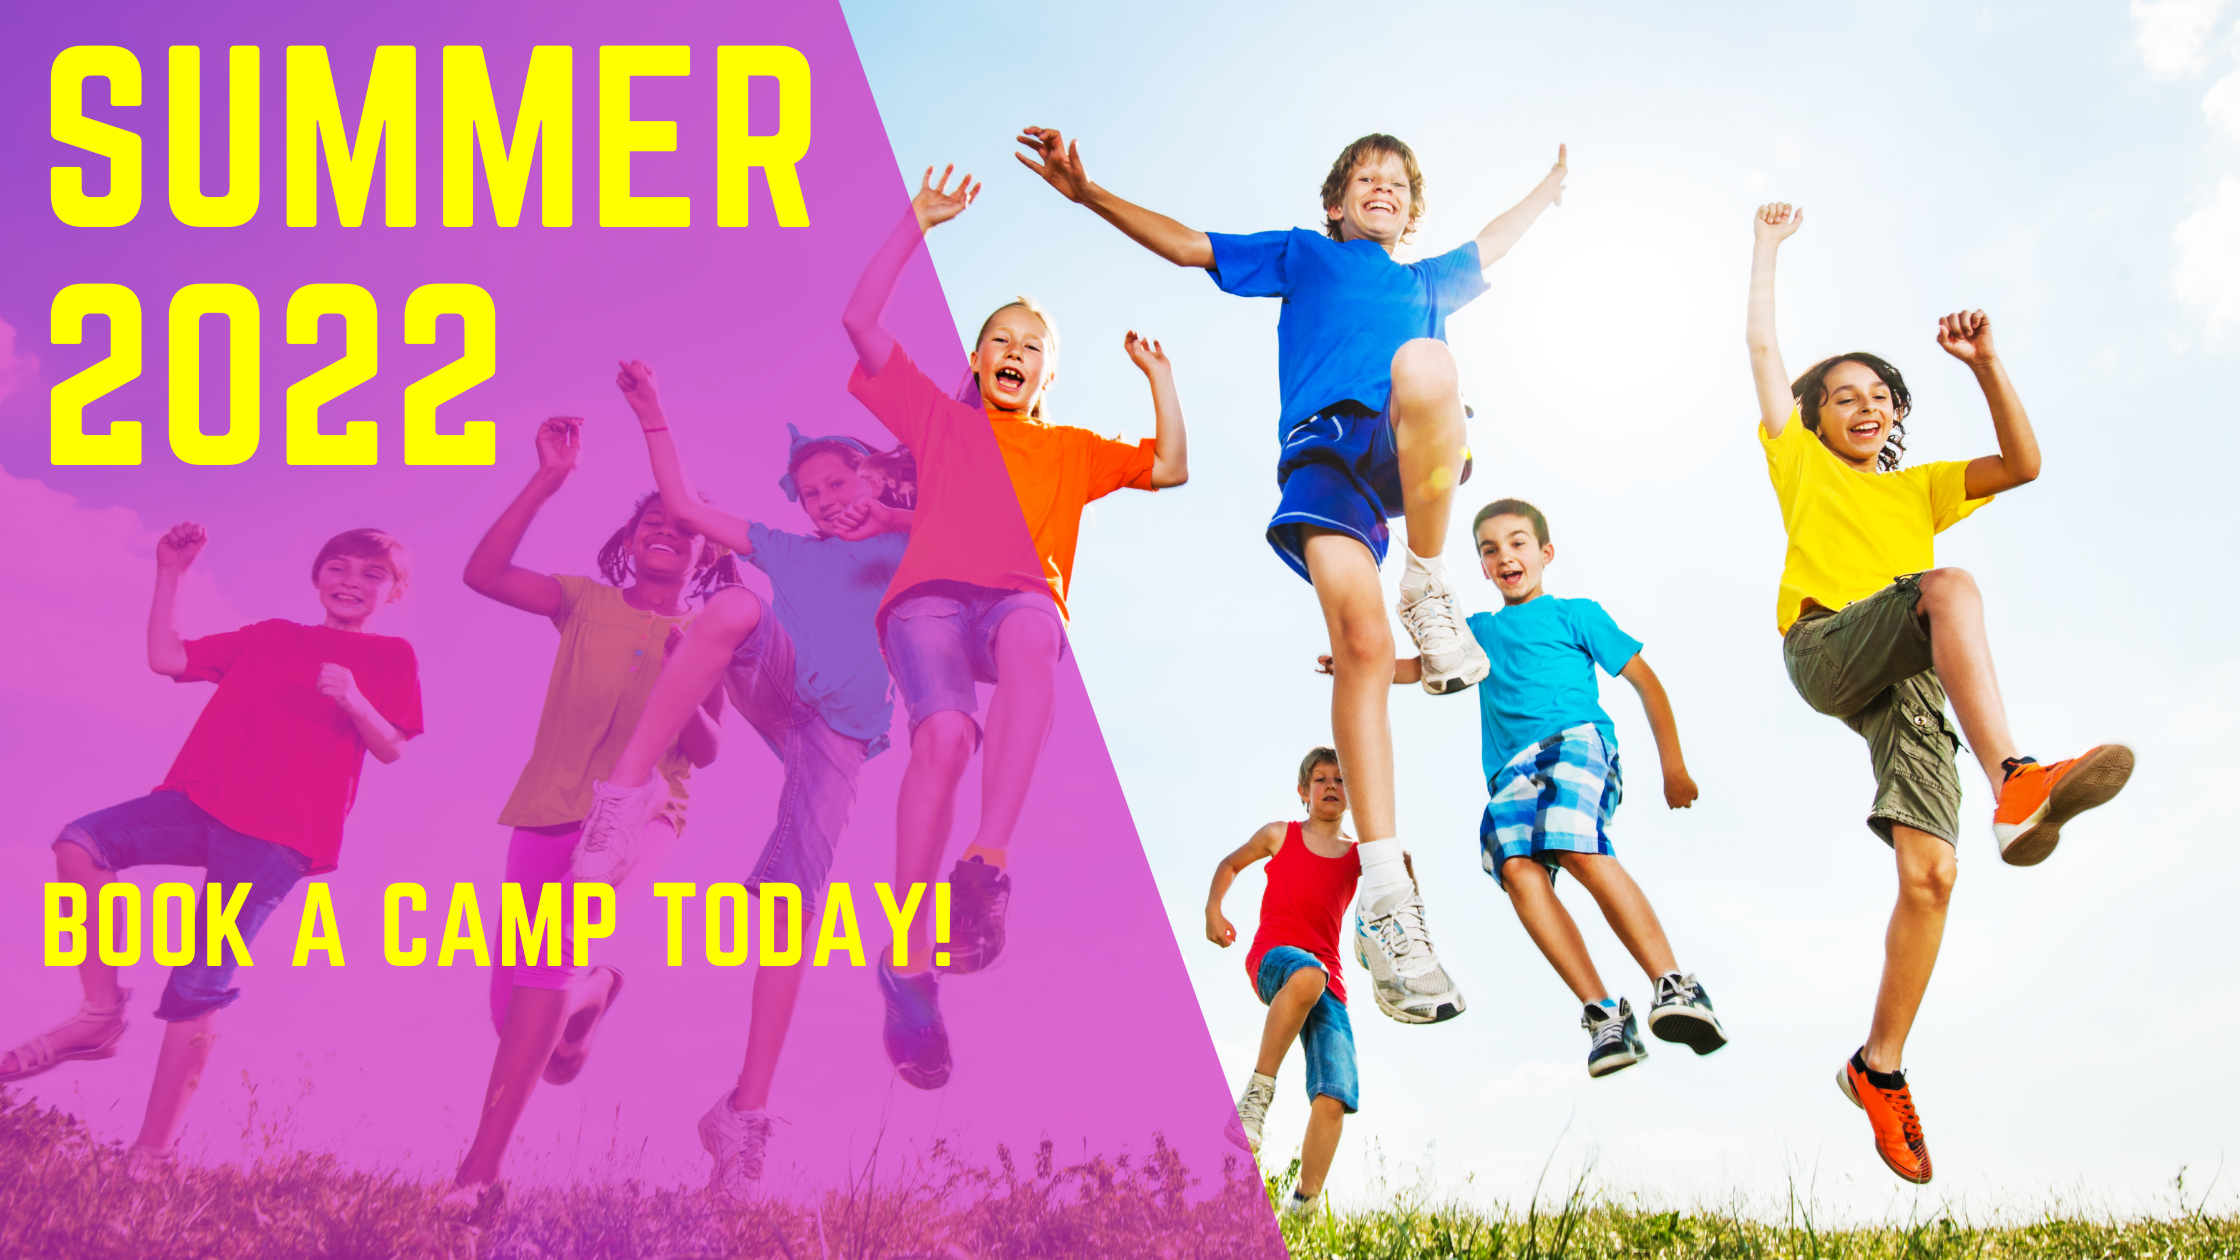 Summer 2022 banner - kids jumping